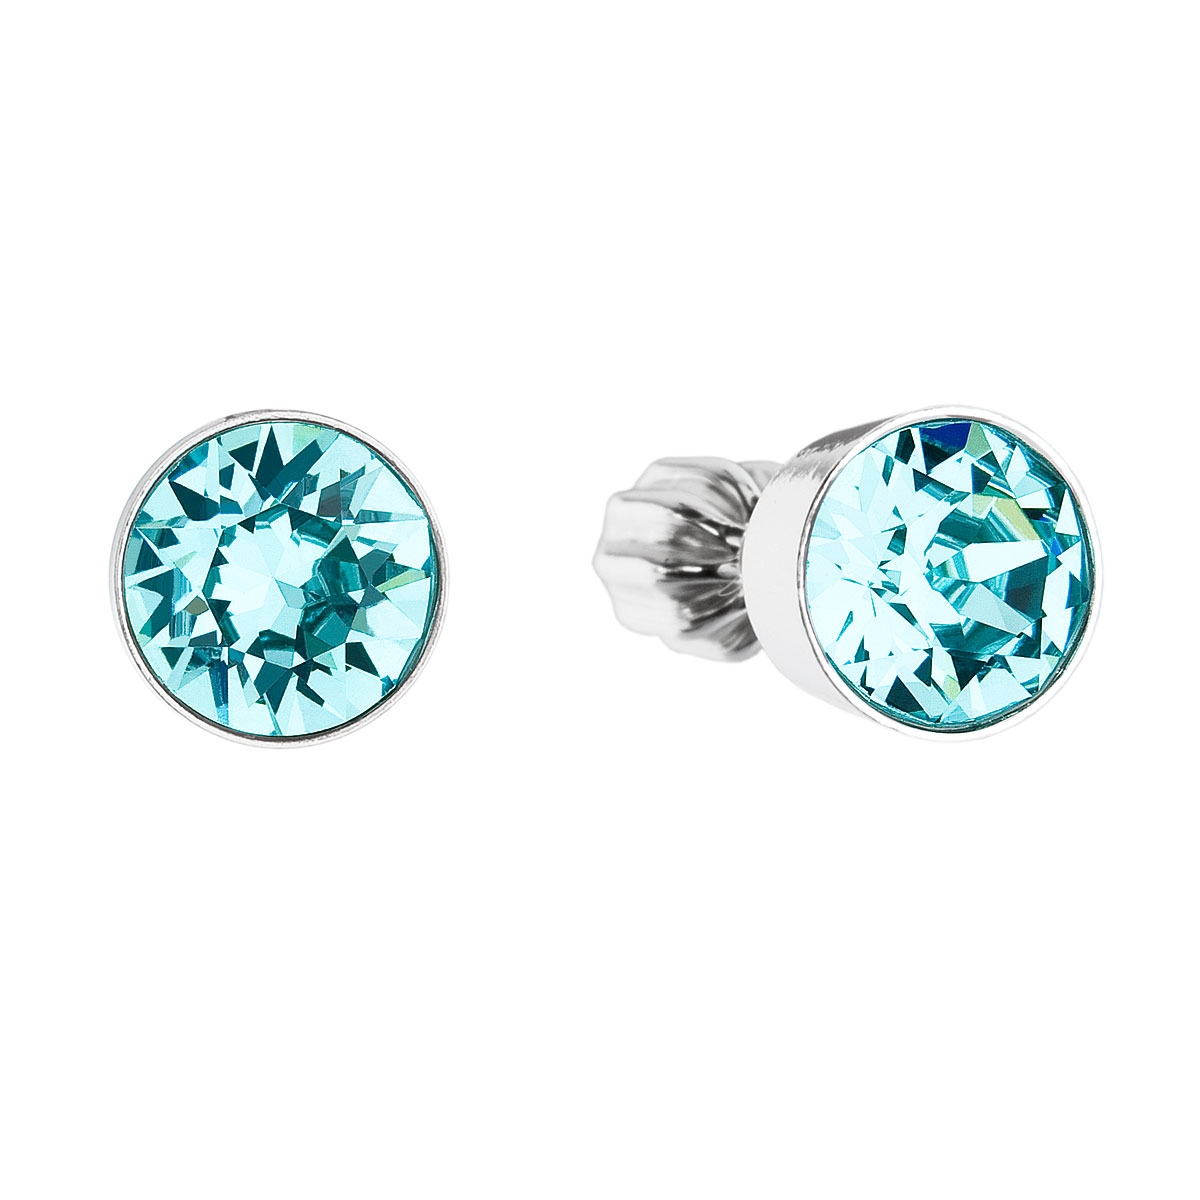 Strieborné náušnice s kryštálmi Crystals from Swarovski® Light Turquoise